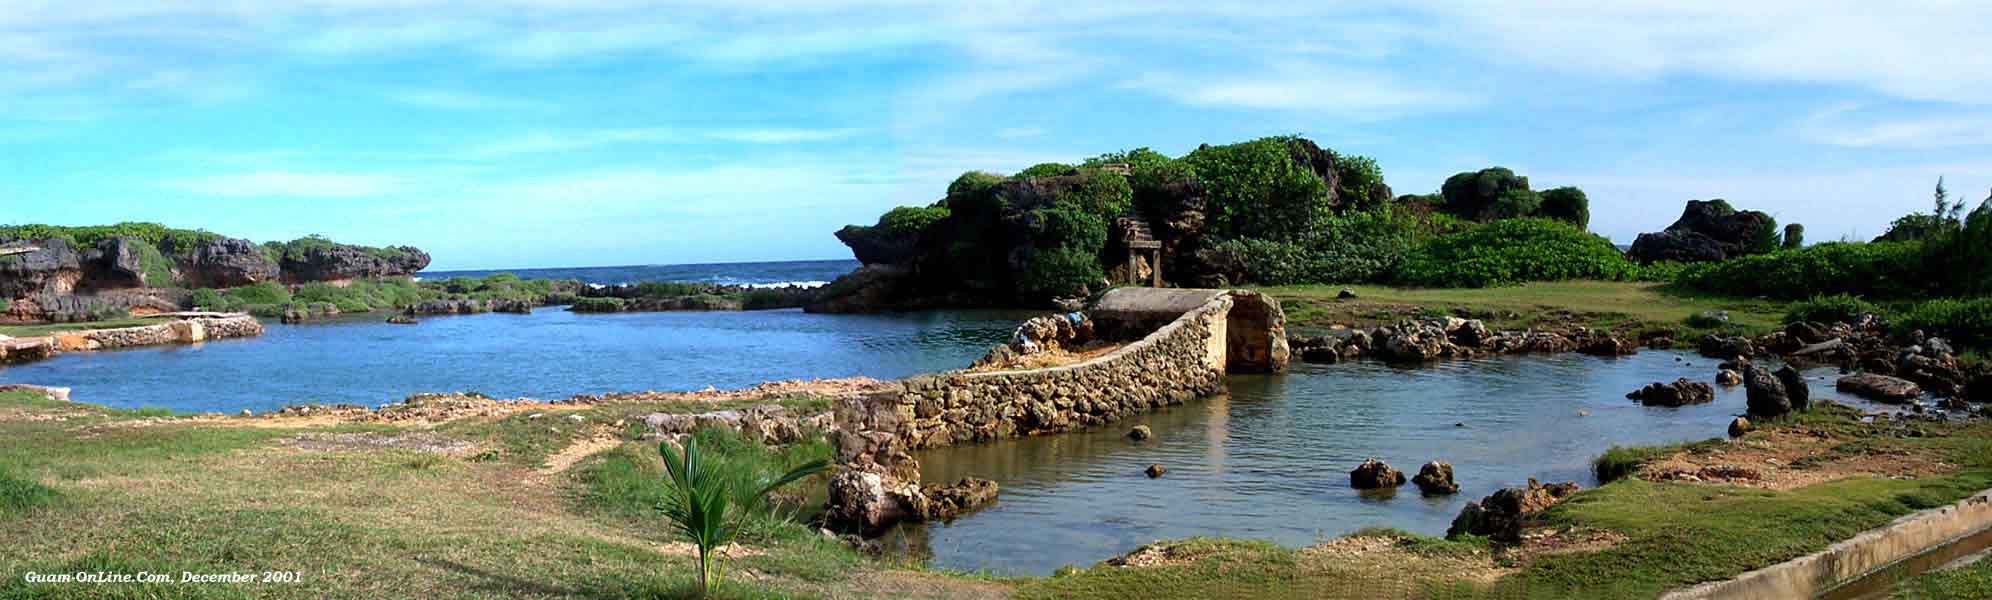 Guam Inarajan natural ocean pools on the Pacific Ocean